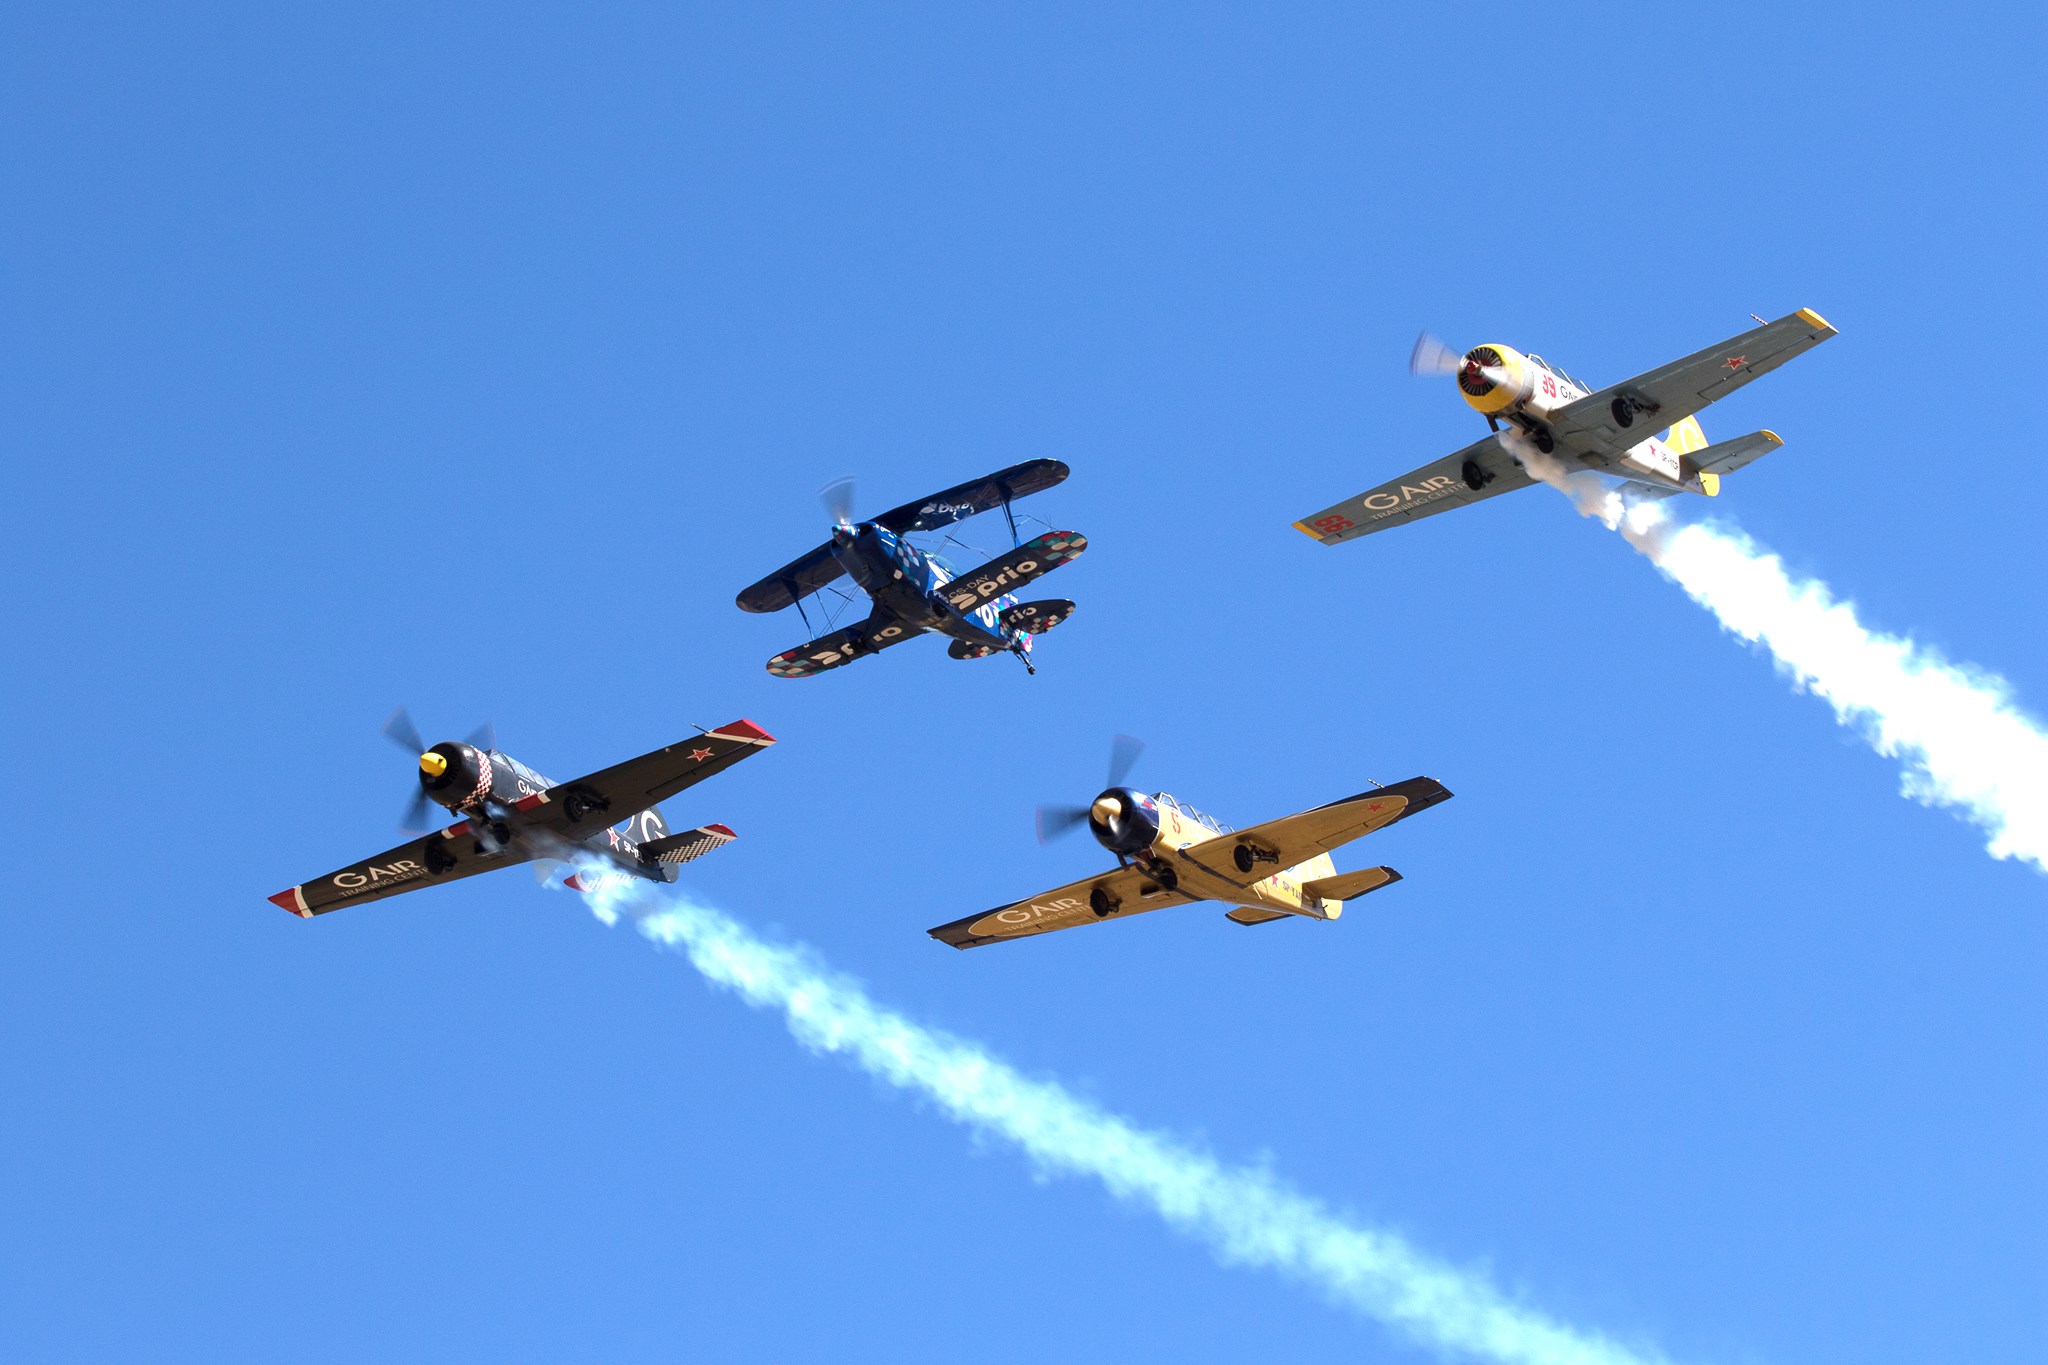 Regresso do Careto Airshow leva espetáculo aéreo aos céus de Bragança